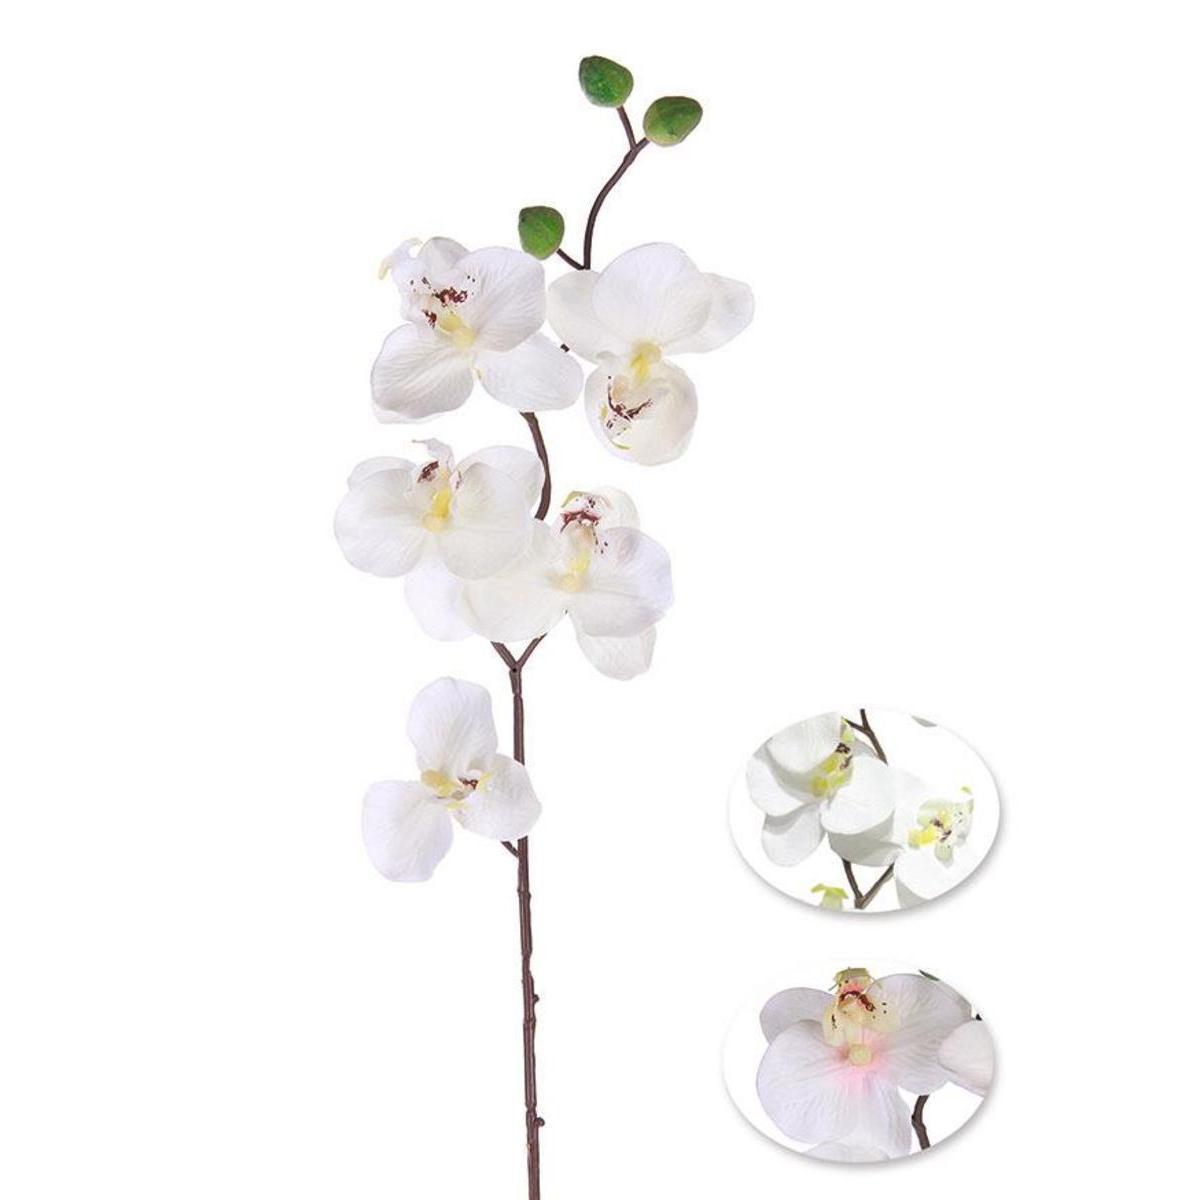 Tige d'orchidée - Vert, blanc, jaune